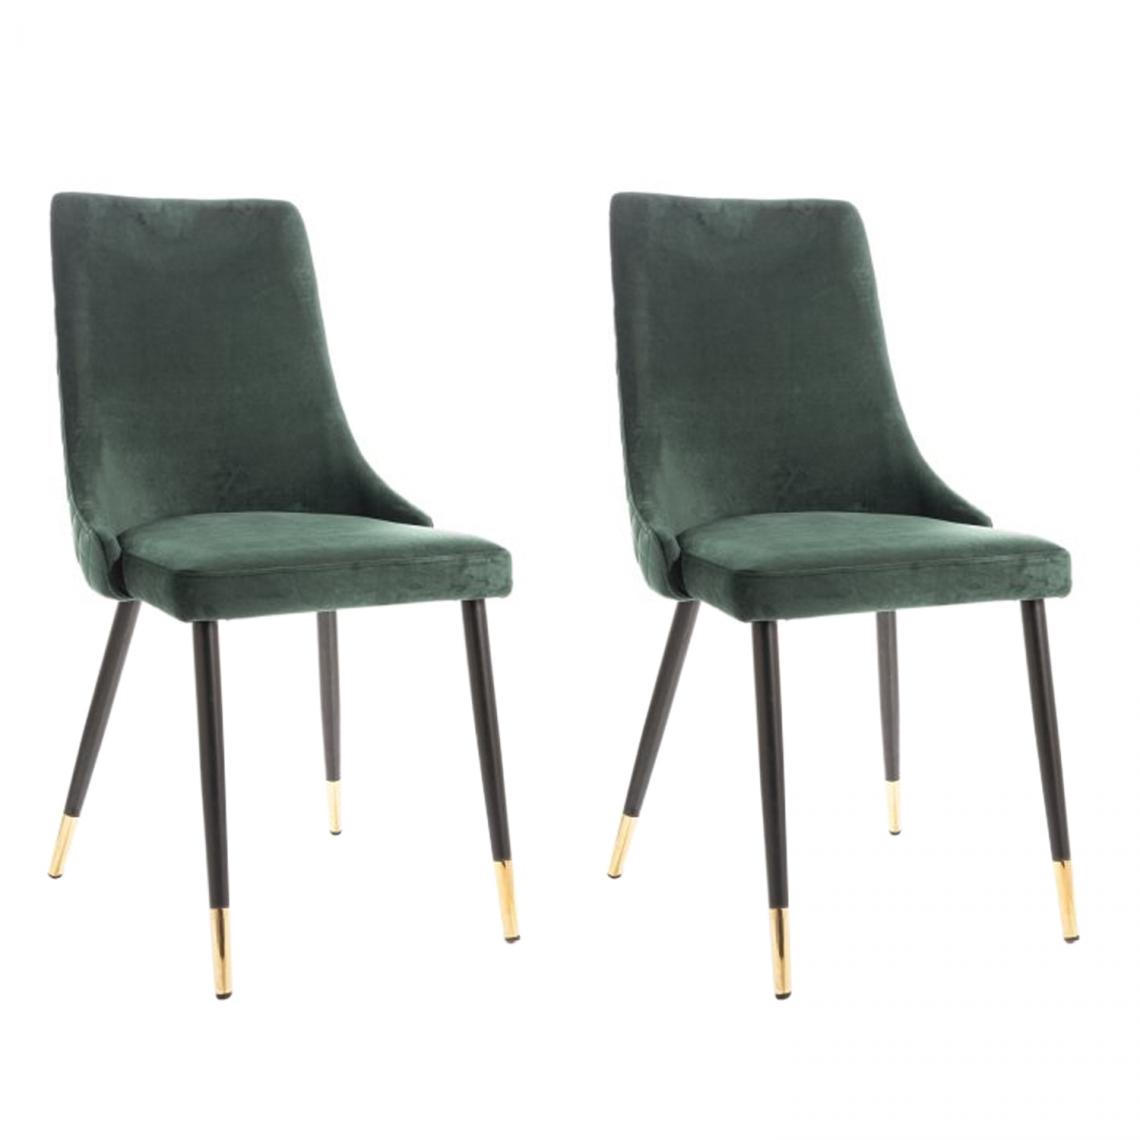 Hucoco - PIANO - Lot de 2 chaises élégantee avec coutures - Style glamour - 92x45x44 cm - Tissu velouté - Vert - Chaises